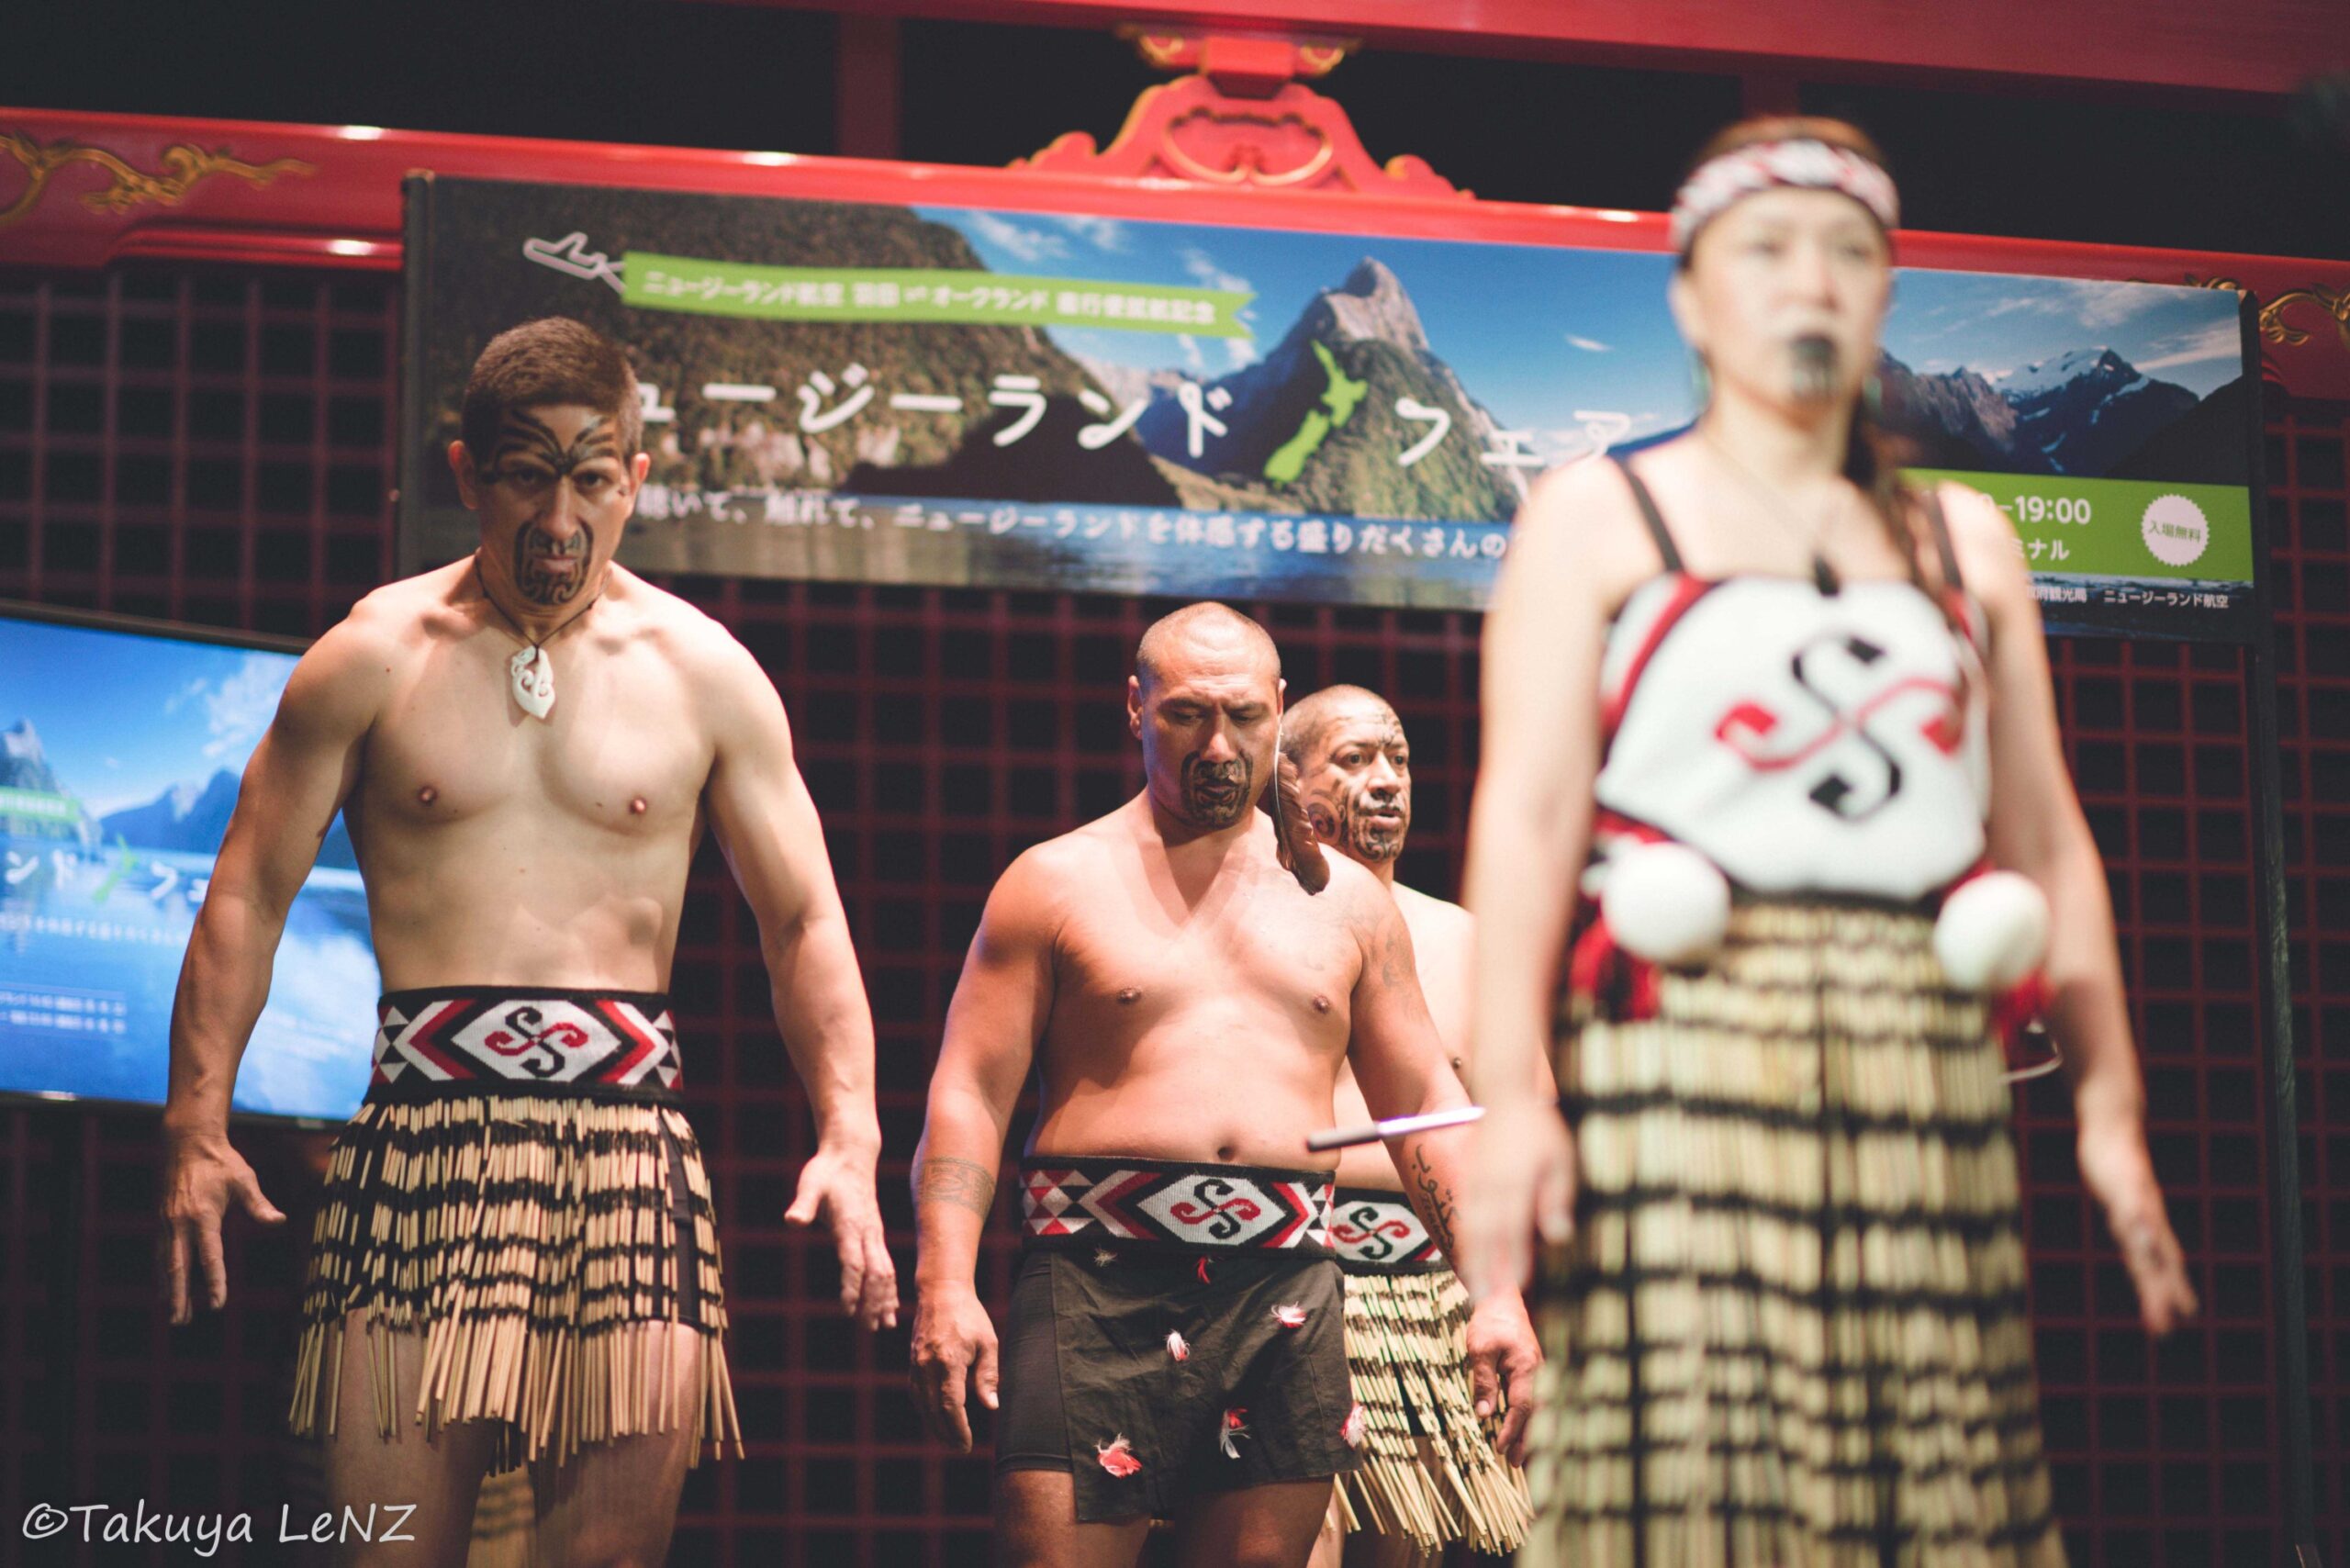 ニュージーランド先住民マオリ族が大切にしている Mana マナ という価値観 New Zealand Photography By Takuya Tomimatsu